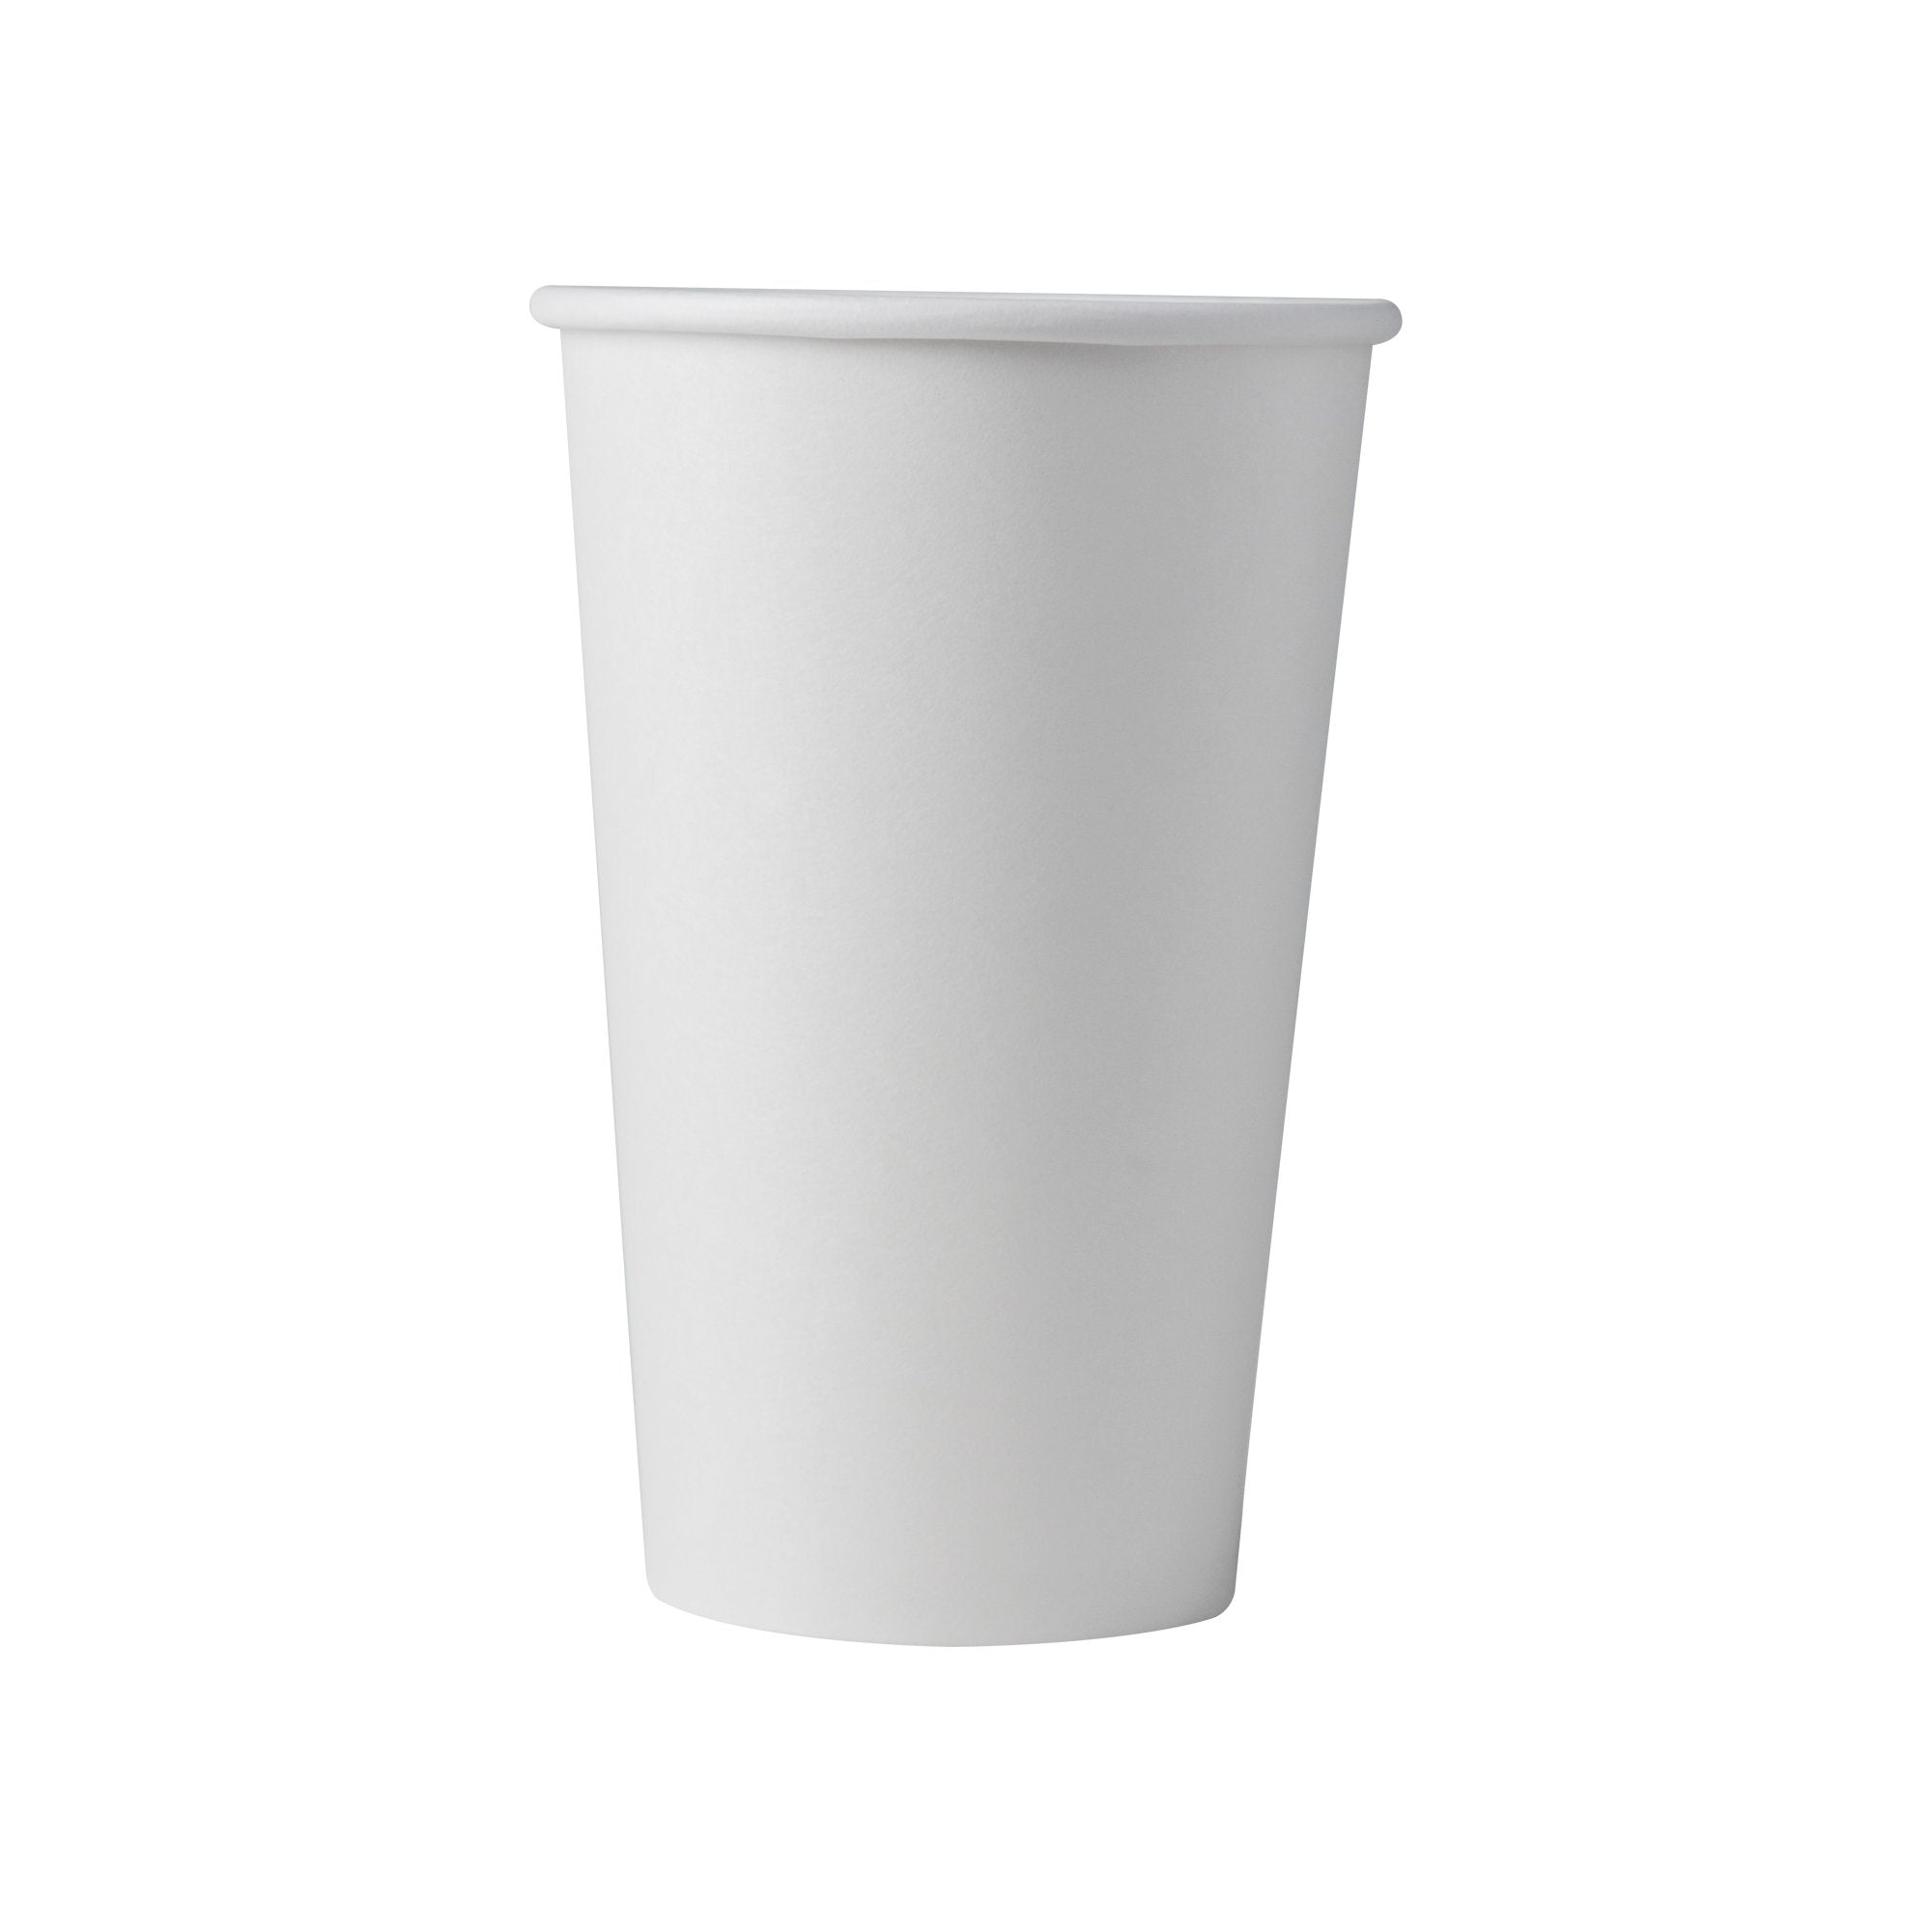 Choice 16 oz. Blue Plastic Cup - 1000/Case